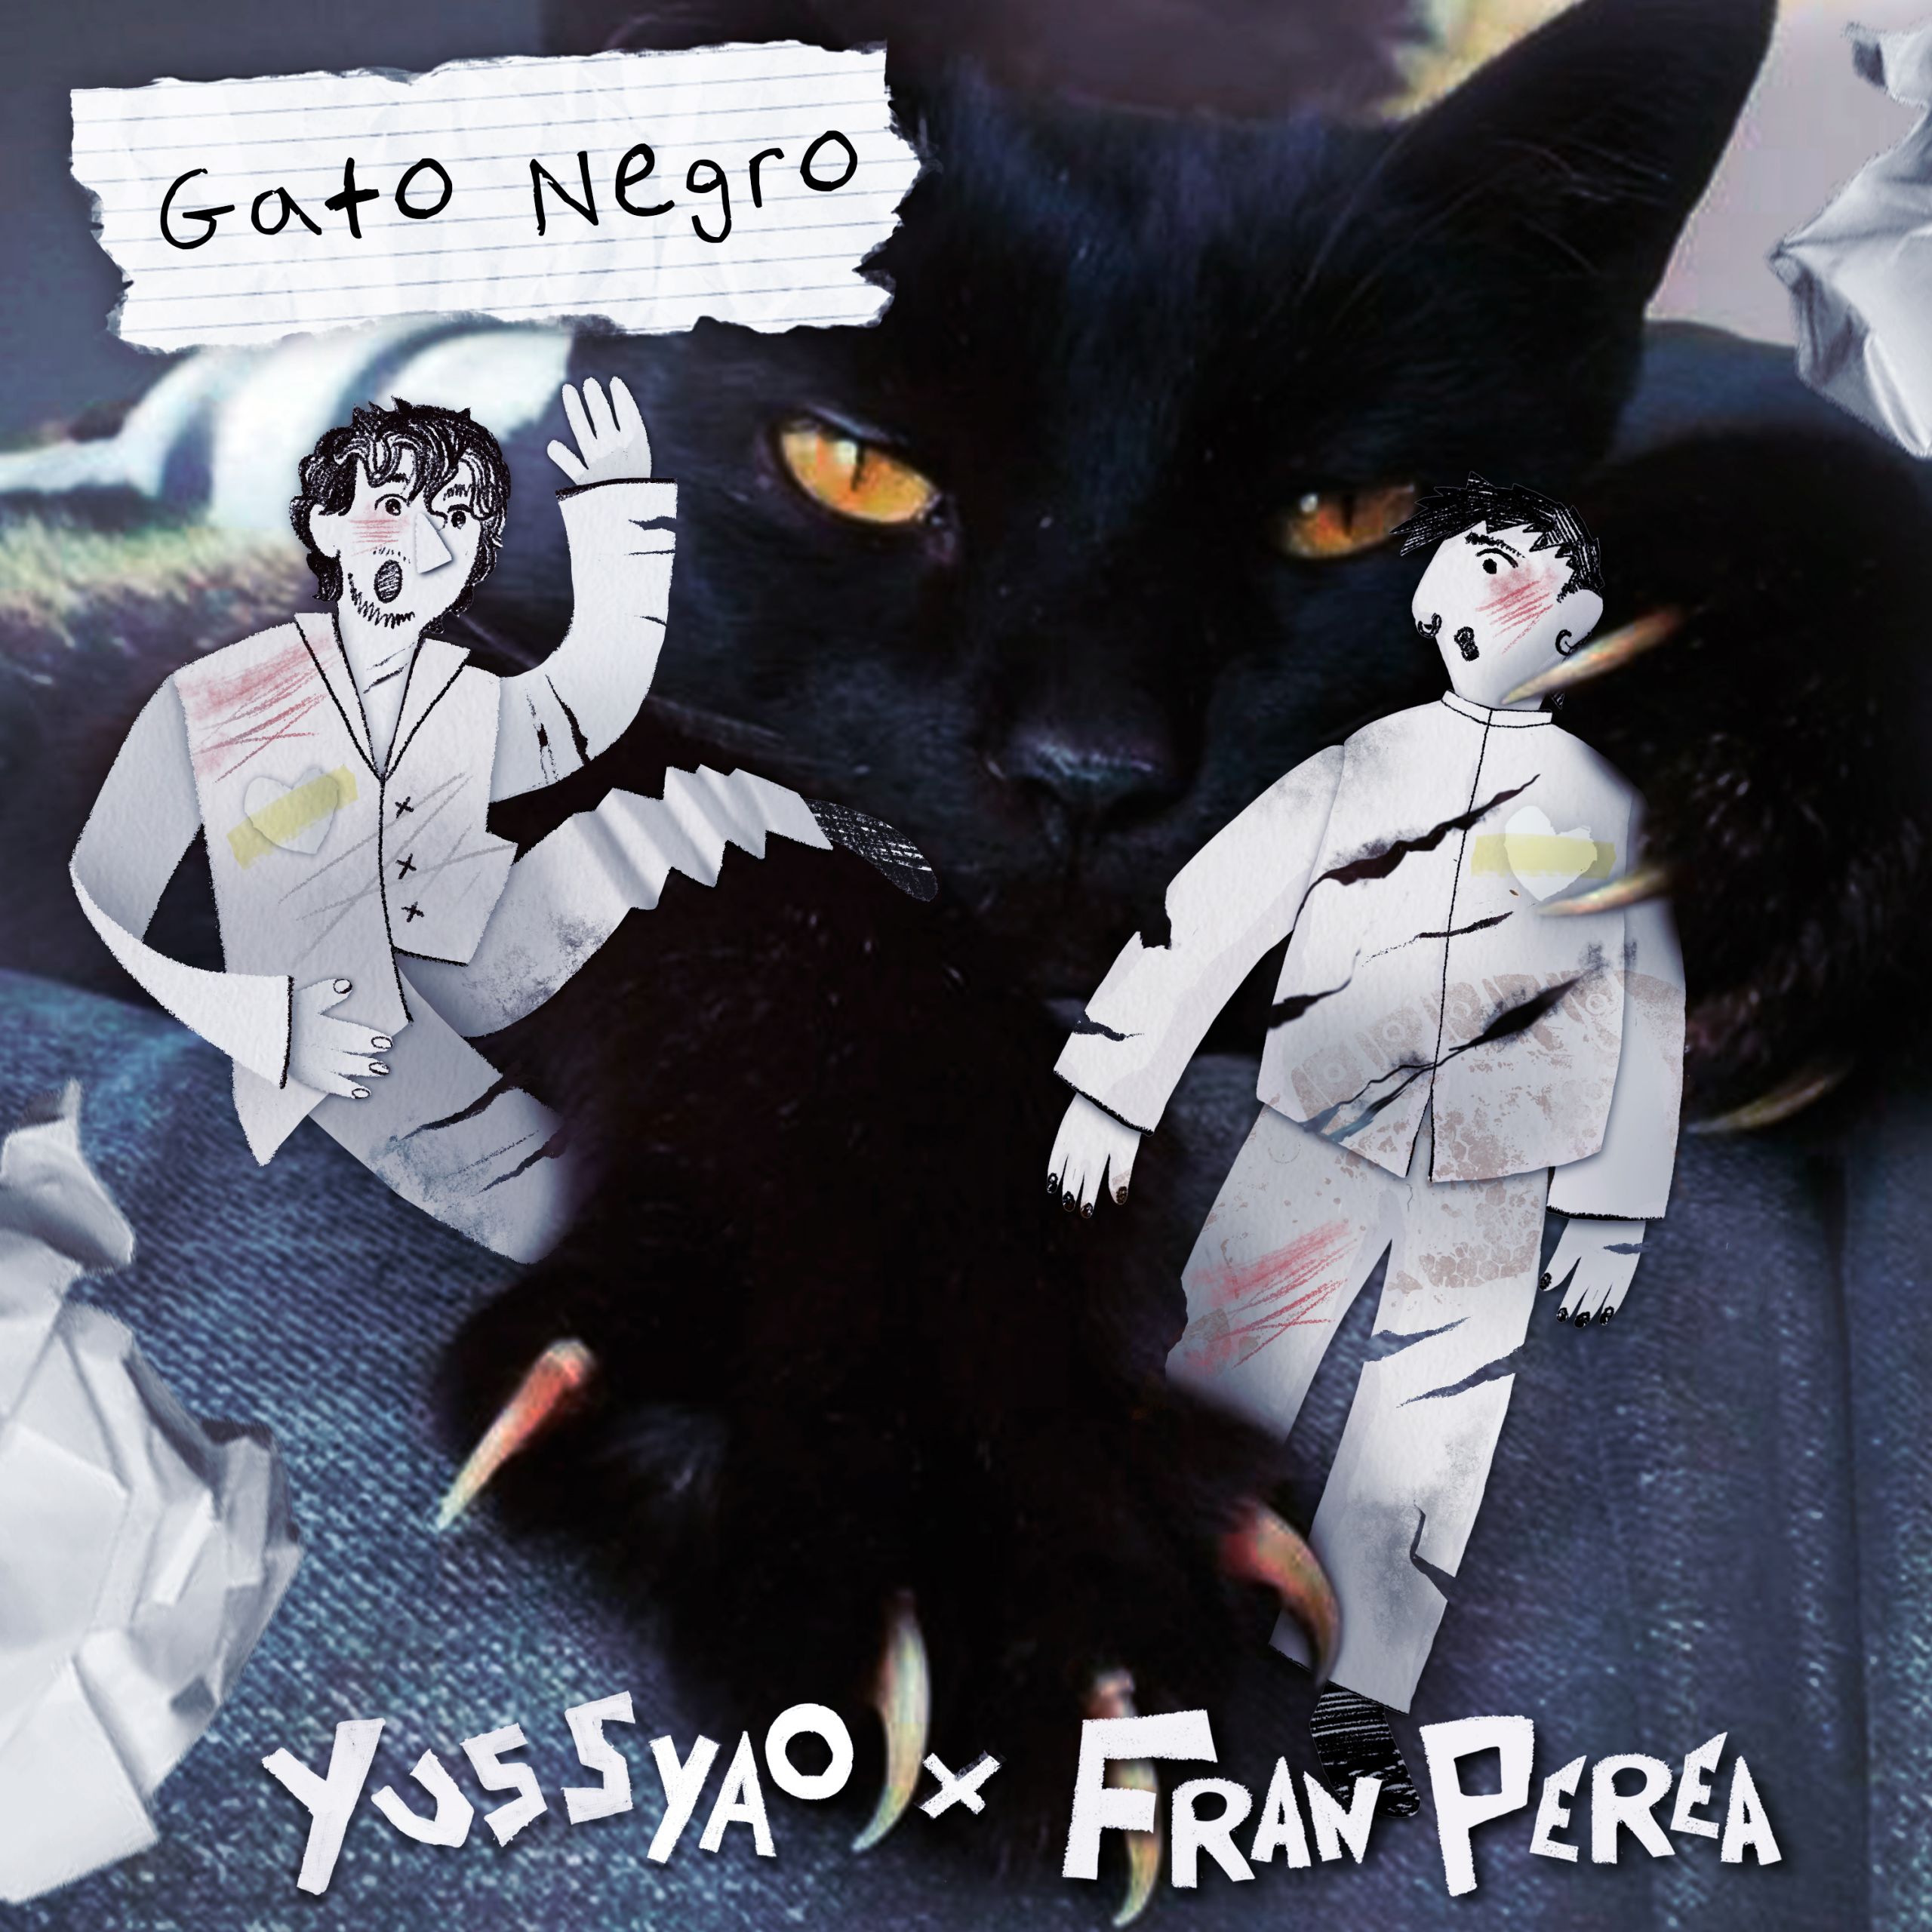 Yuss Yao con Fran Perea "Gato negro", nuevo videoclip